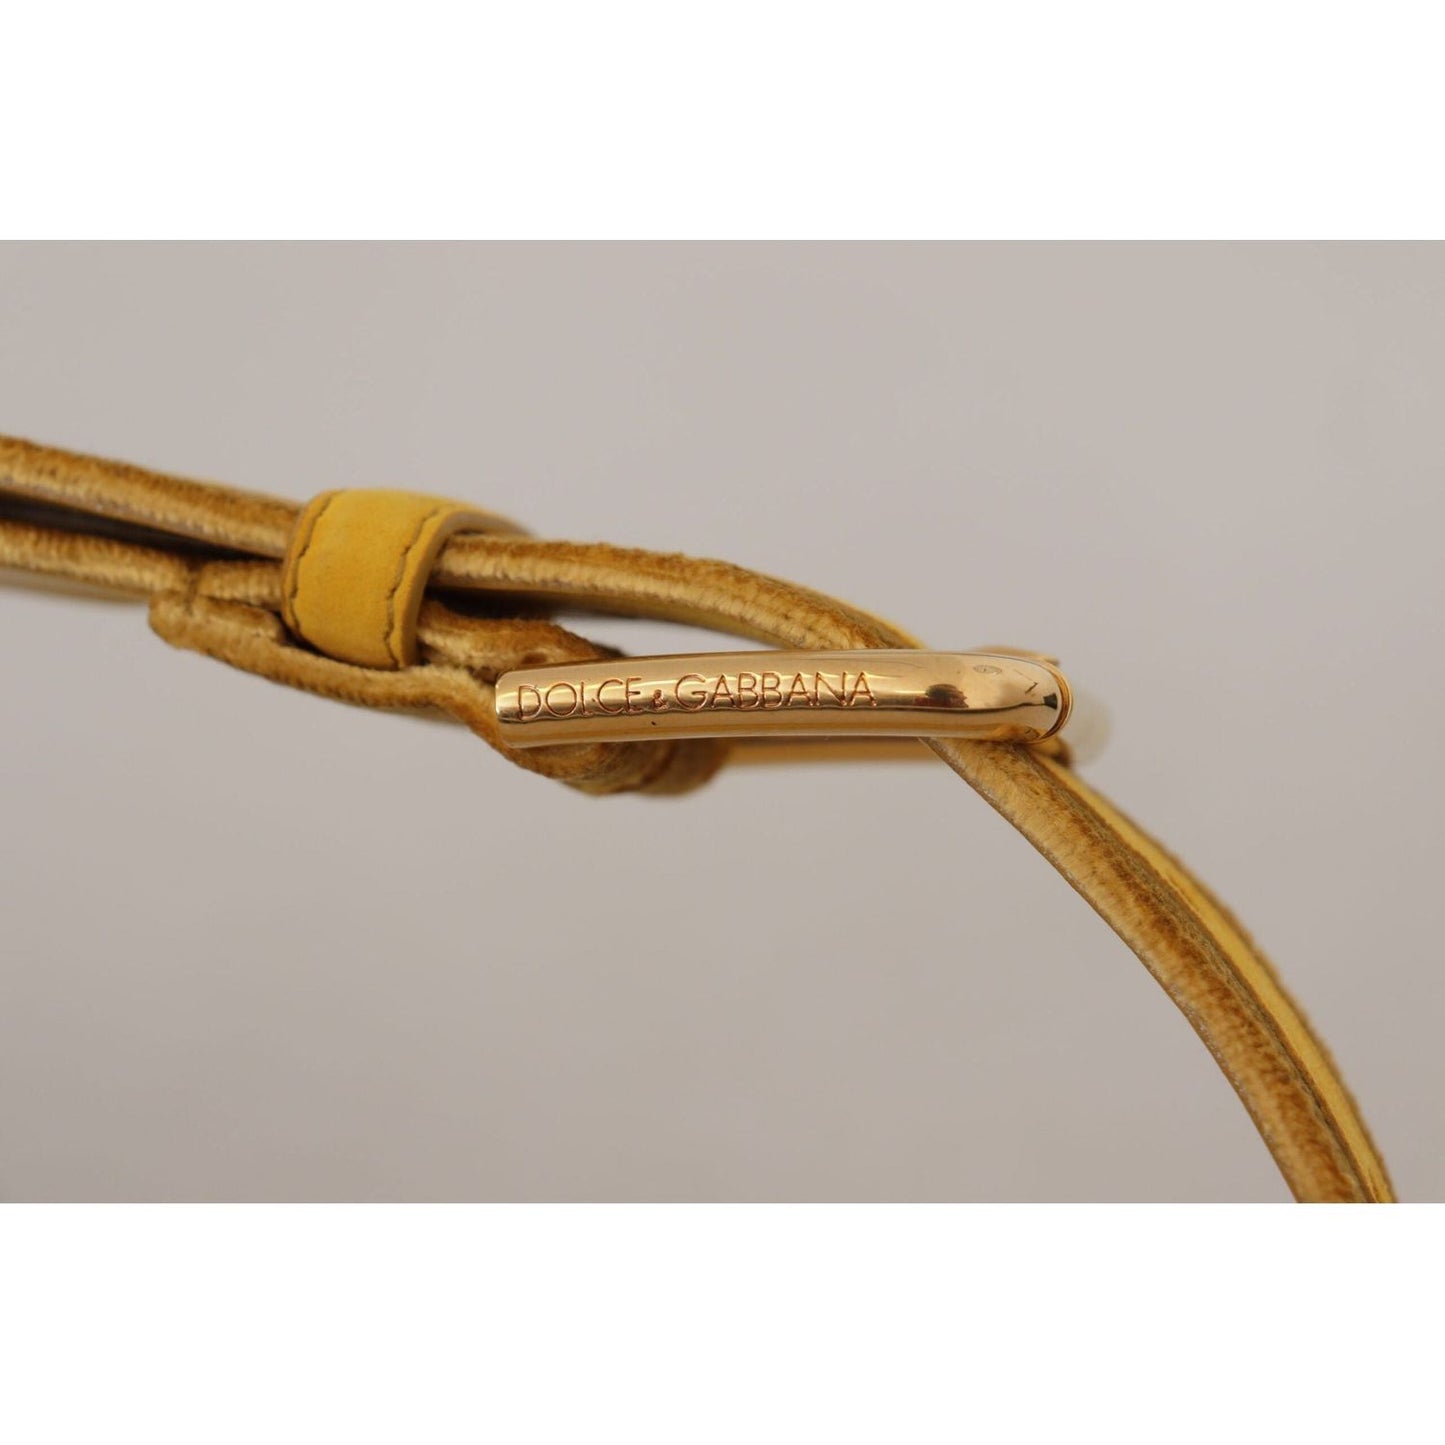 Dolce & Gabbana Elegant Velvet Designer Gold-Buckled Belt yellow-velvet-gold-metal-logo-engraved-buckle-belt IMG_8501-1-scaled-cbdc6416-9b0.jpg